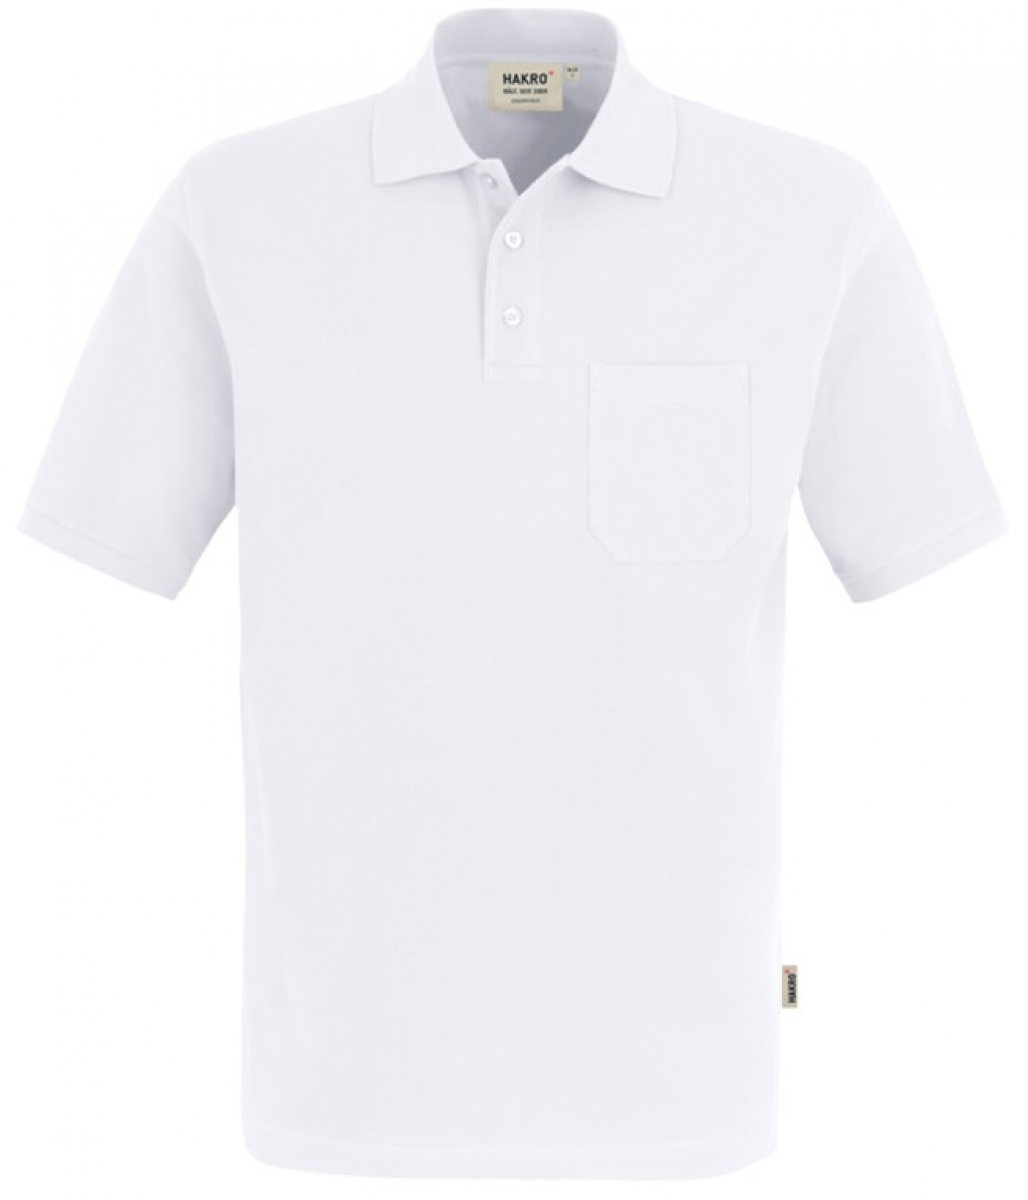 HAKRO-Worker-Shirts, Pocket-Poloshirt Top, wei